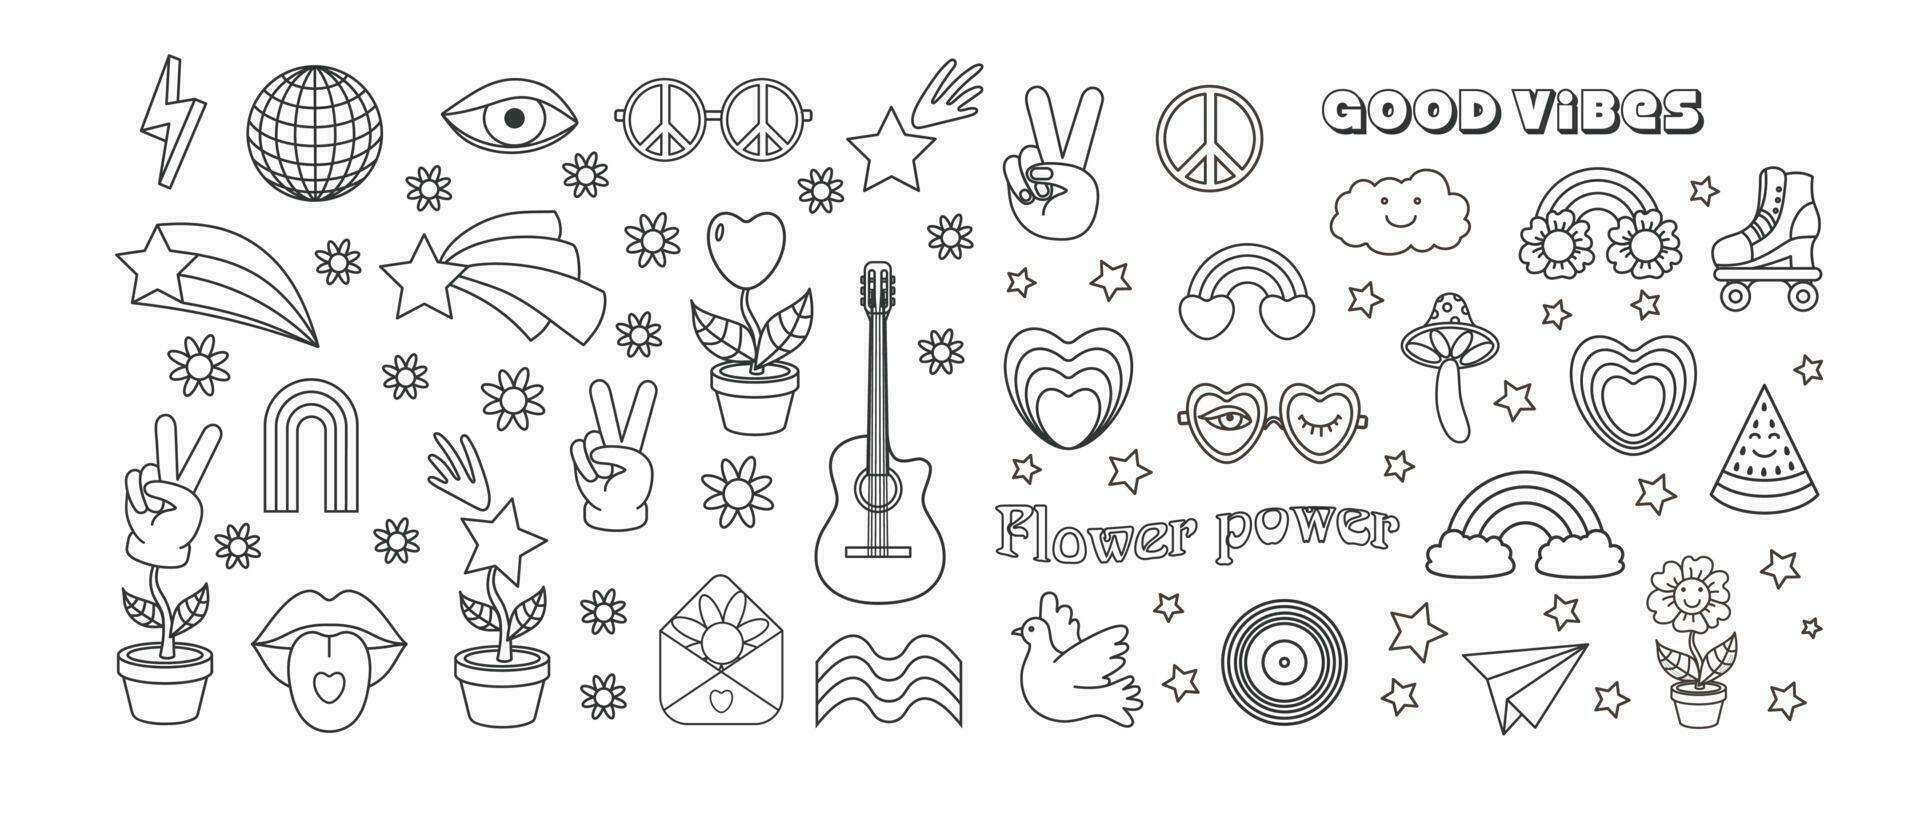 översikt fred, kärlek, regnbåge, disko boll, solglasögon, mun, gitarr ikon etc. isolerat vektor illustration. häftig hippie 70s uppsättning.